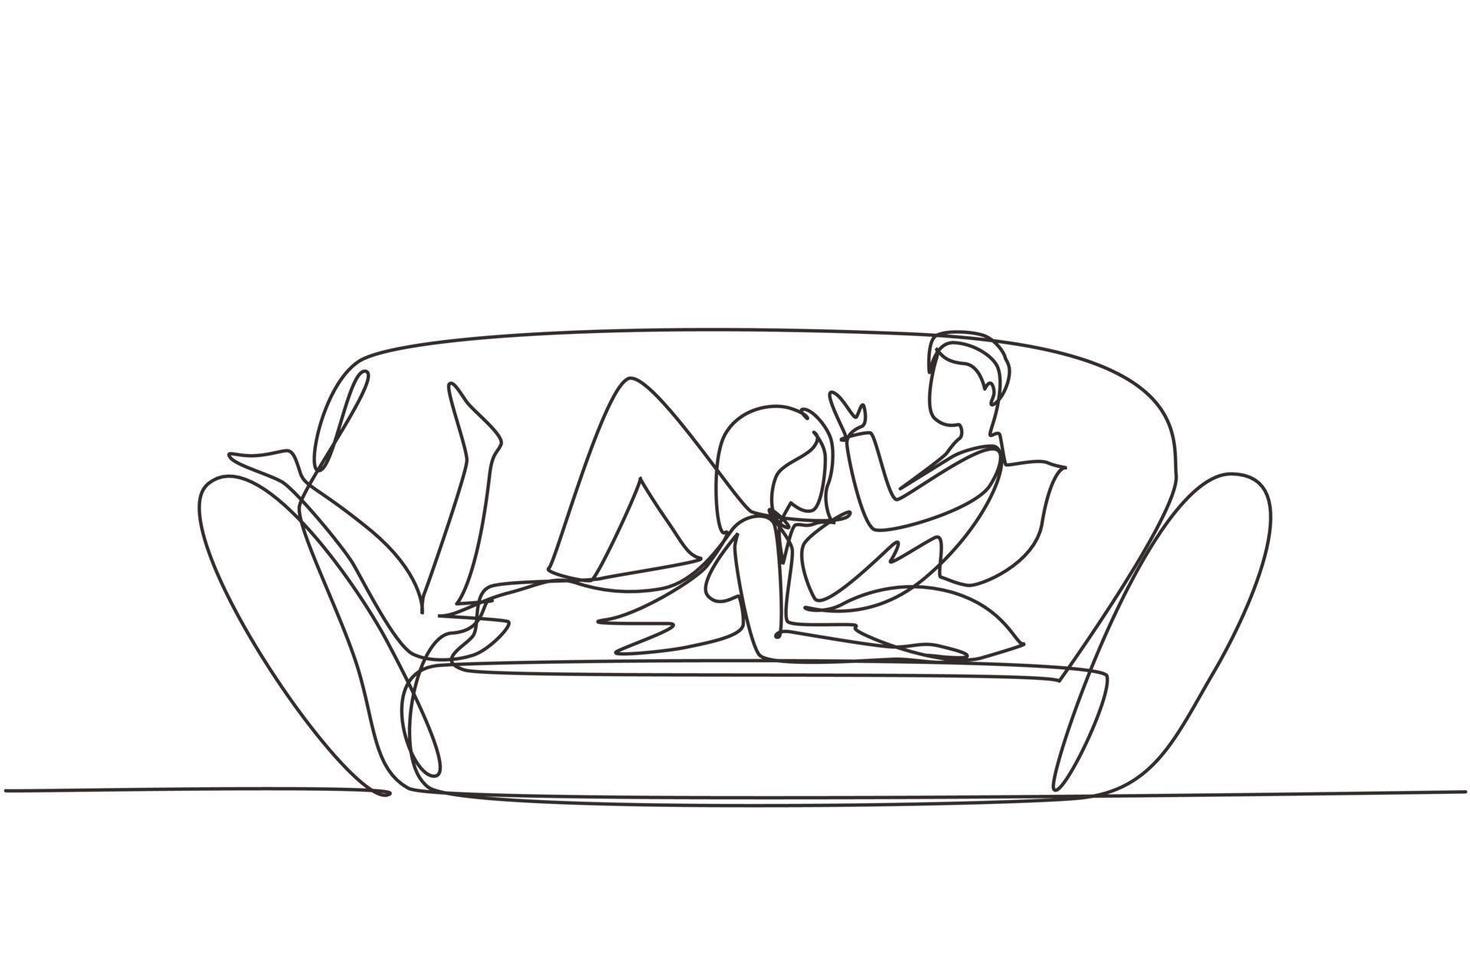 única linha contínua desenhando mulher e homem apaixonado deitado no sofá confortável e conversando. casal no sofá aconchegante relaxando juntos em casa à noite. vetor de design gráfico de desenho dinâmico de uma linha